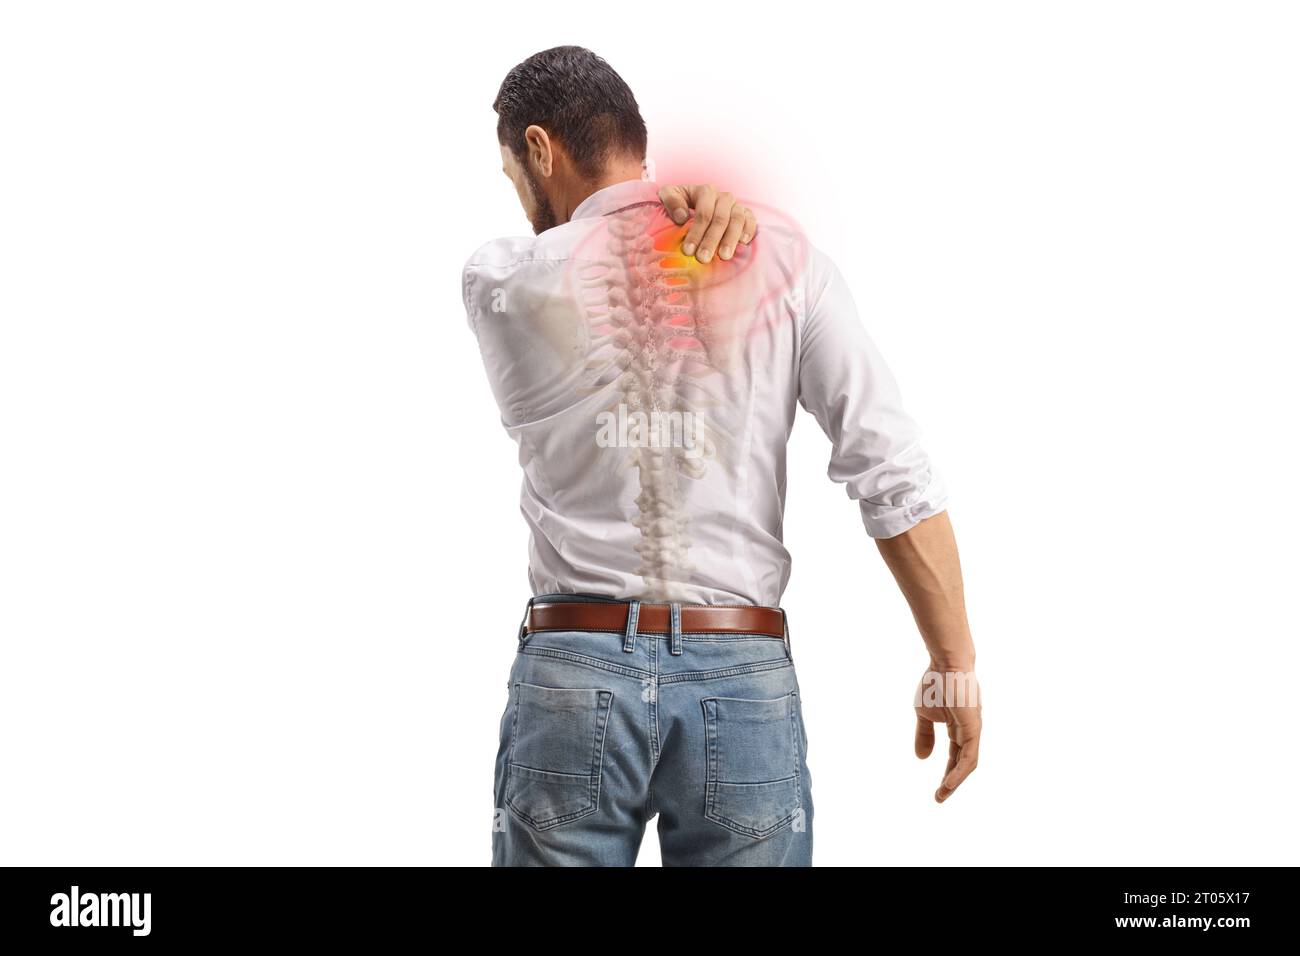 Vue arrière d'un homme souffrant de douleurs dans le haut du dos tenant une tache rouge isolée sur fond blanc Banque D'Images